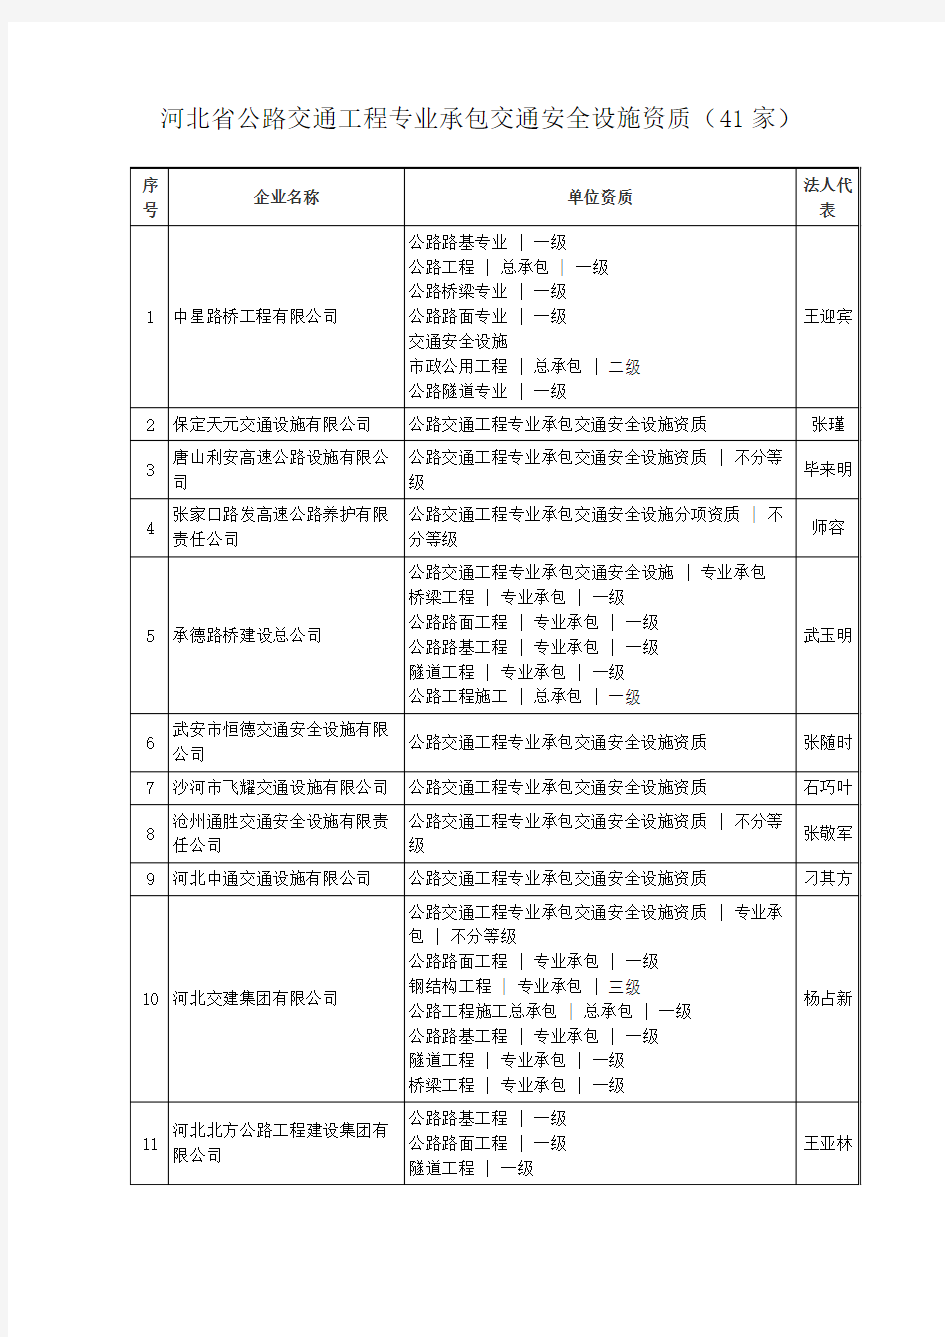 河北省公路交通工程专业承包交通安全设施资质(41家)